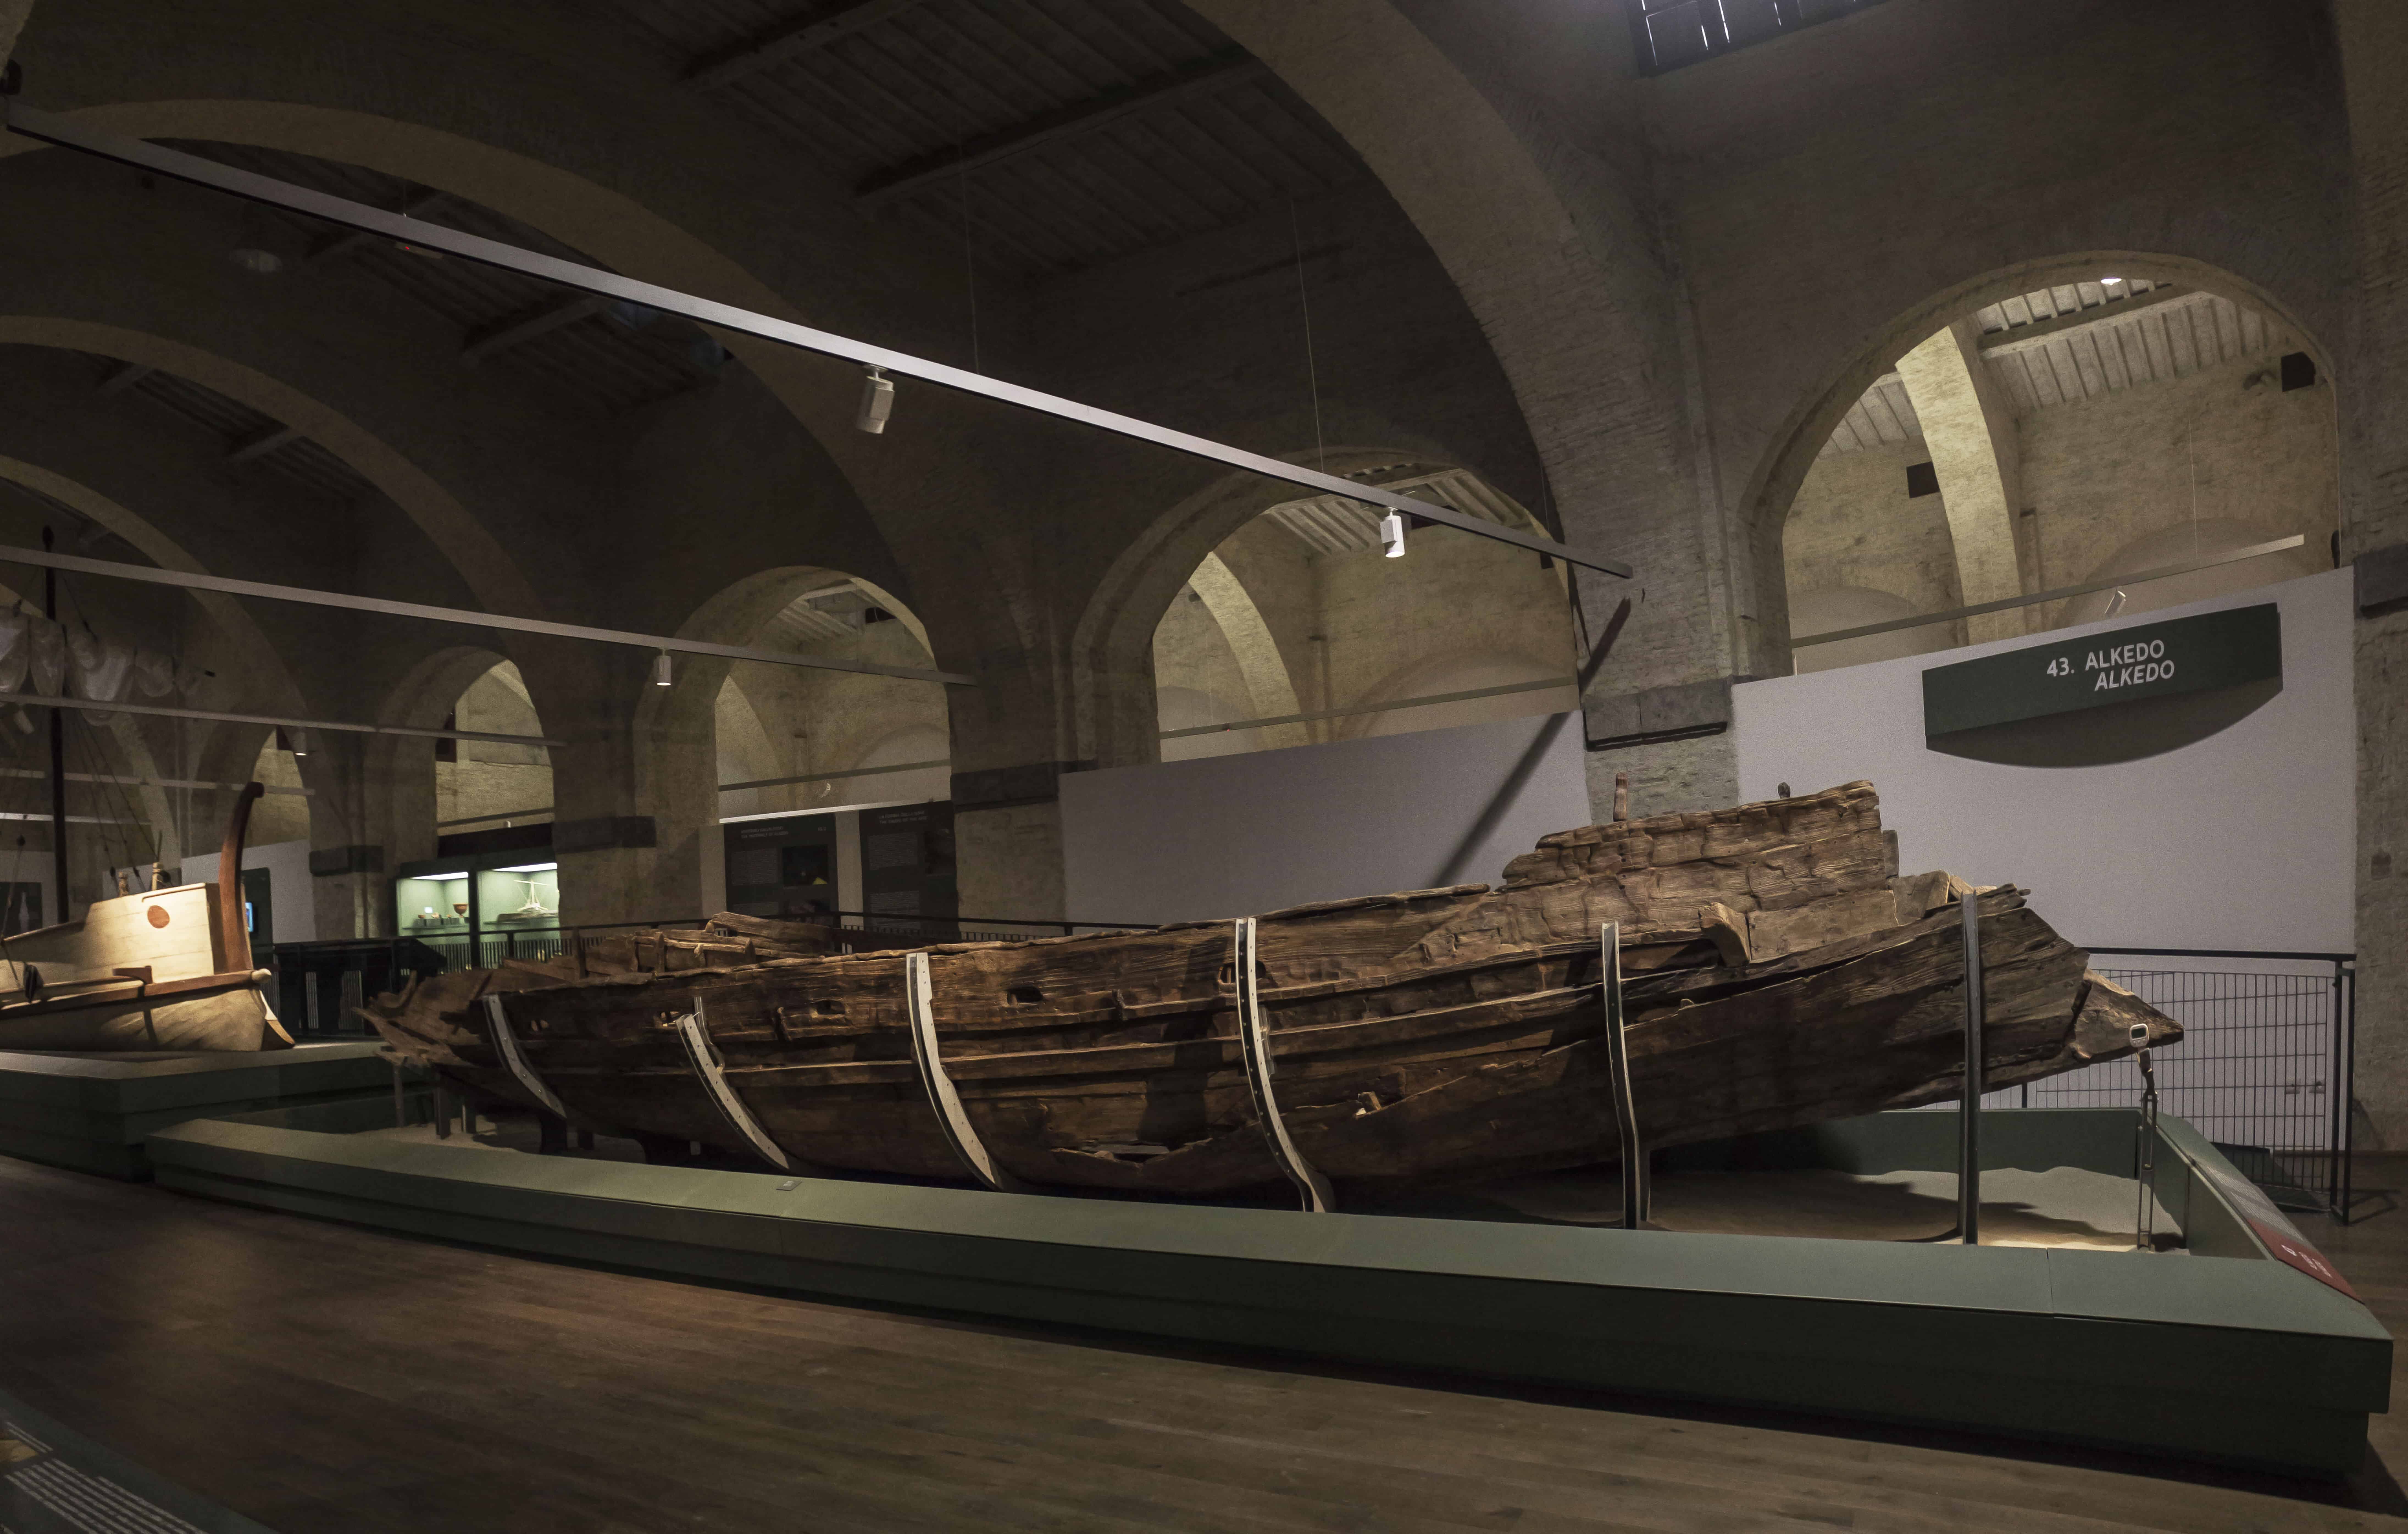 Una delle navi restaurate (Museo Navi Romane)